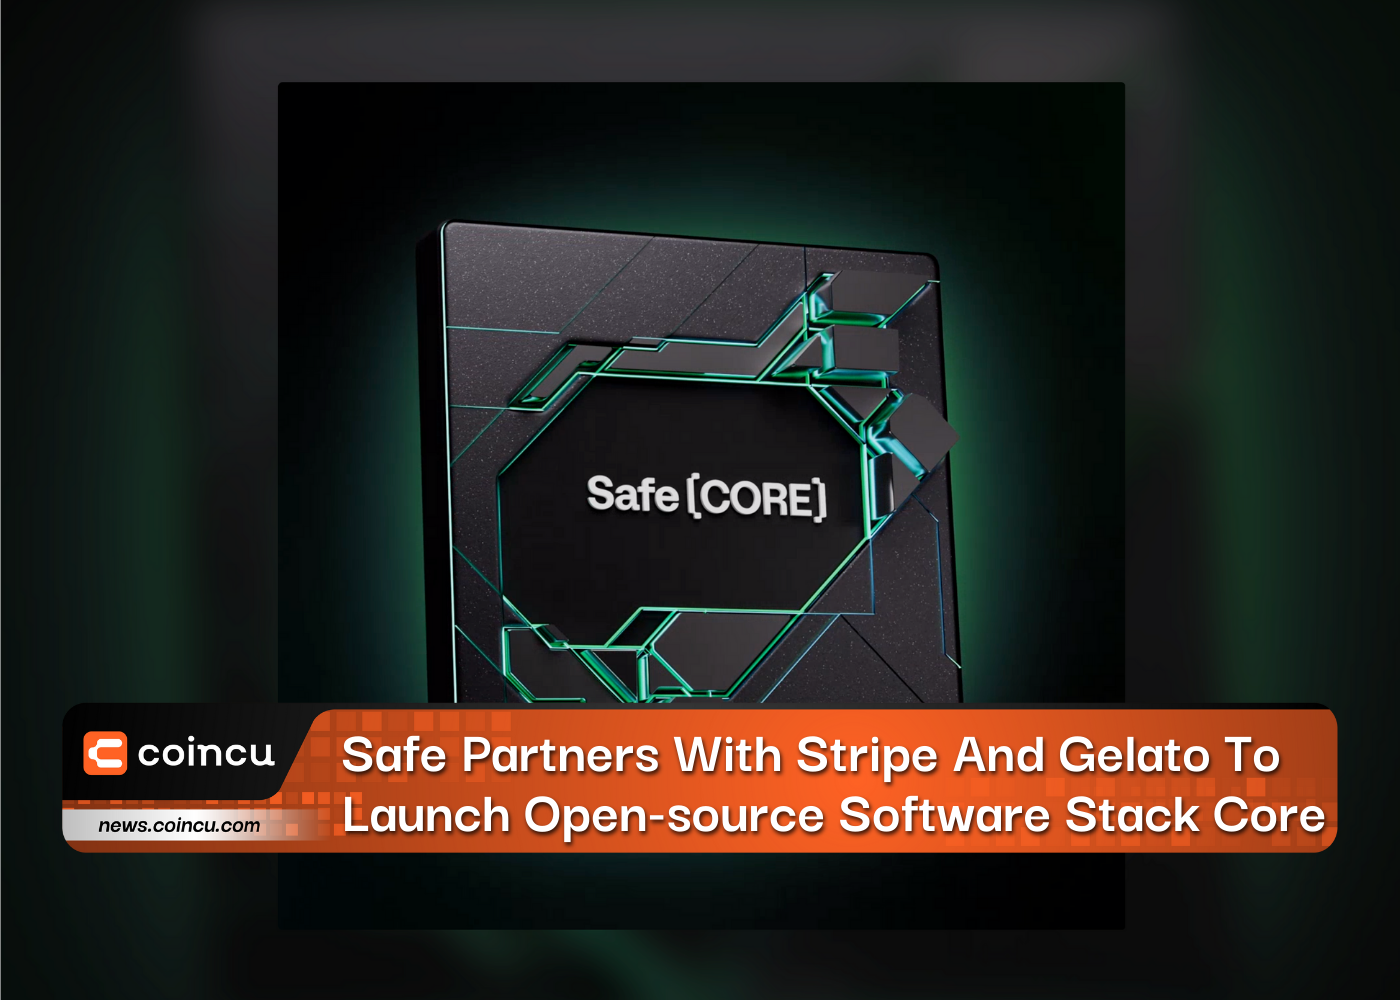 Safe faz parceria com Stripe e Gelato para lançar software de código aberto Stack Core